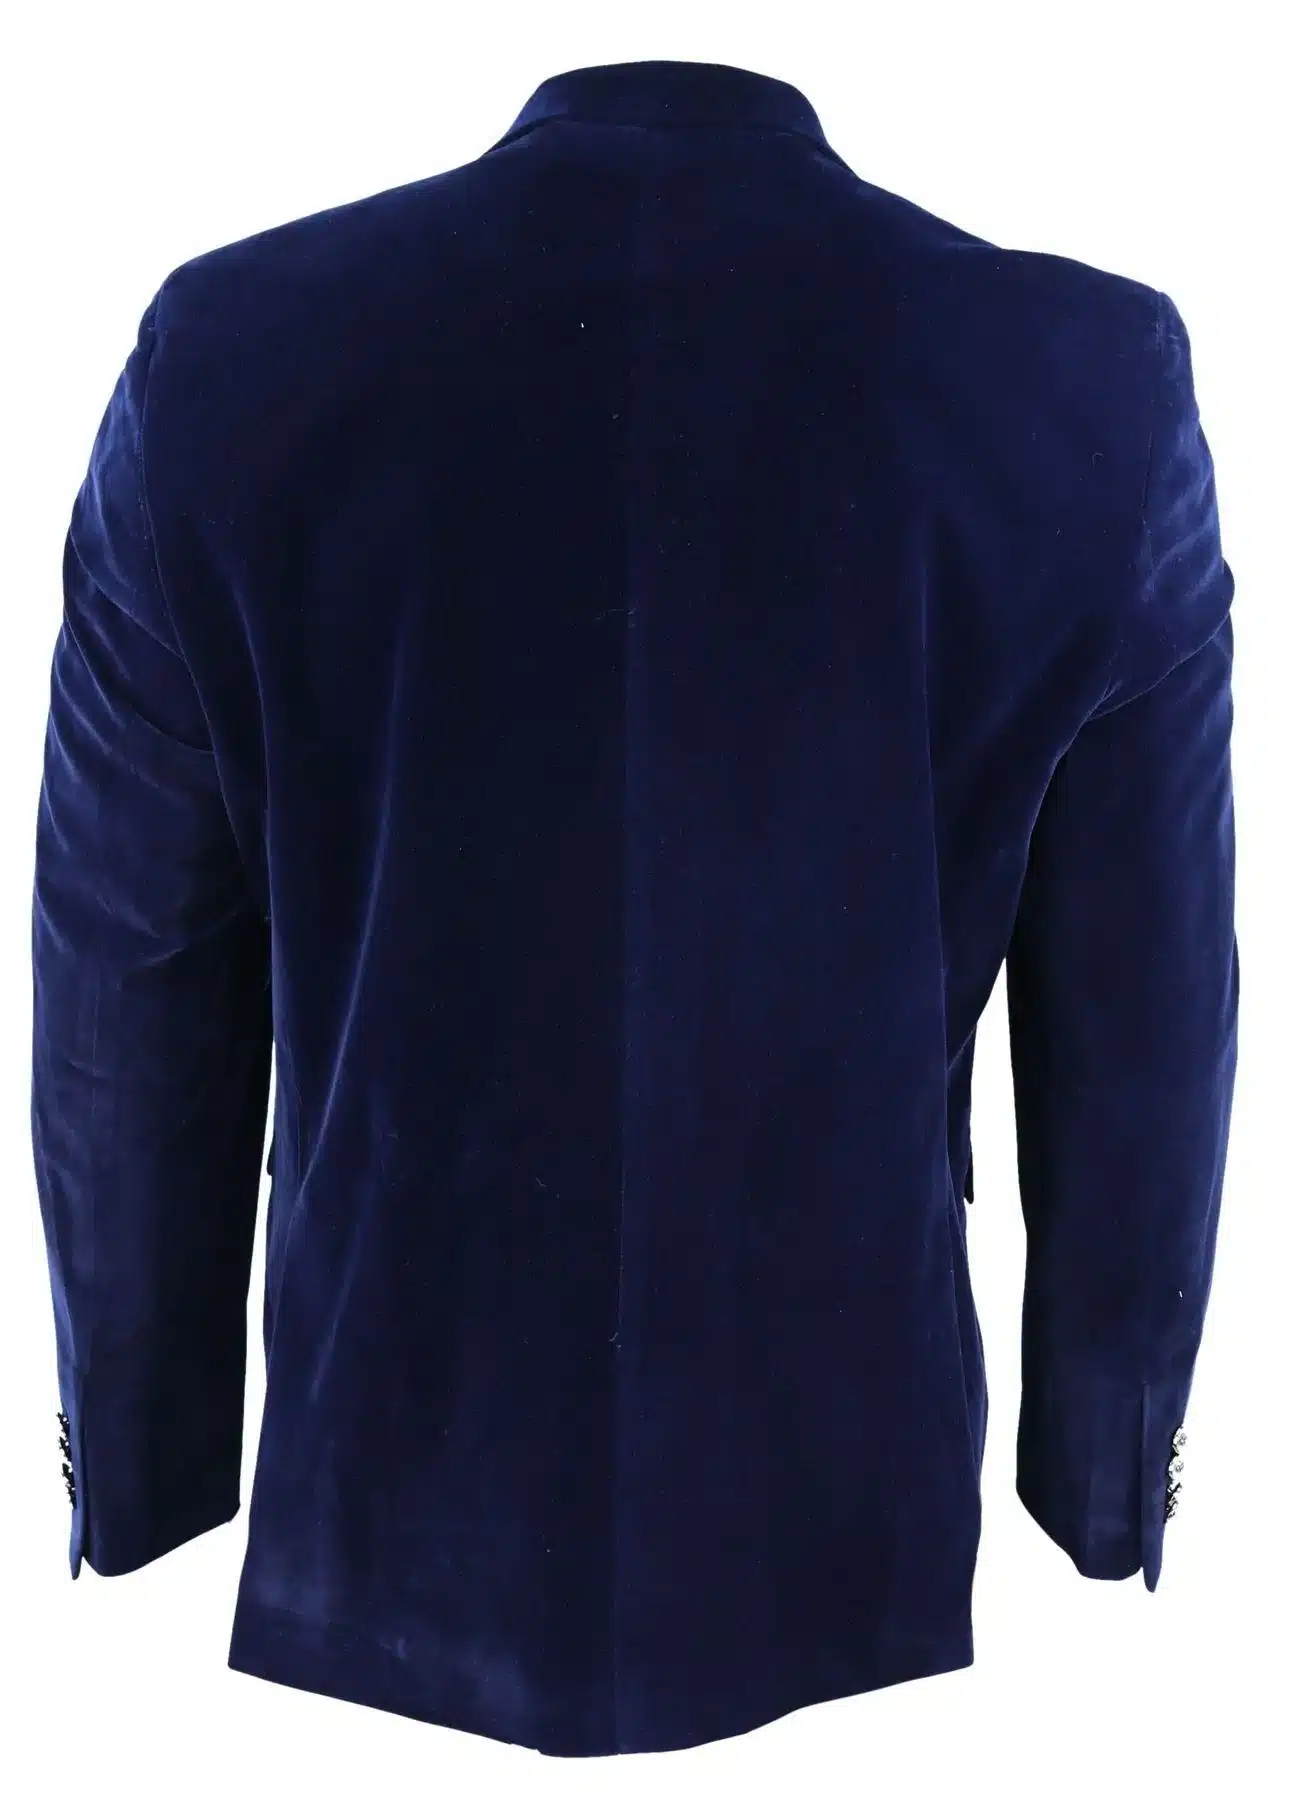 Men's Blazer Jackets : Formal, Casual, Tweed - Buy Online - Happy Gentleman